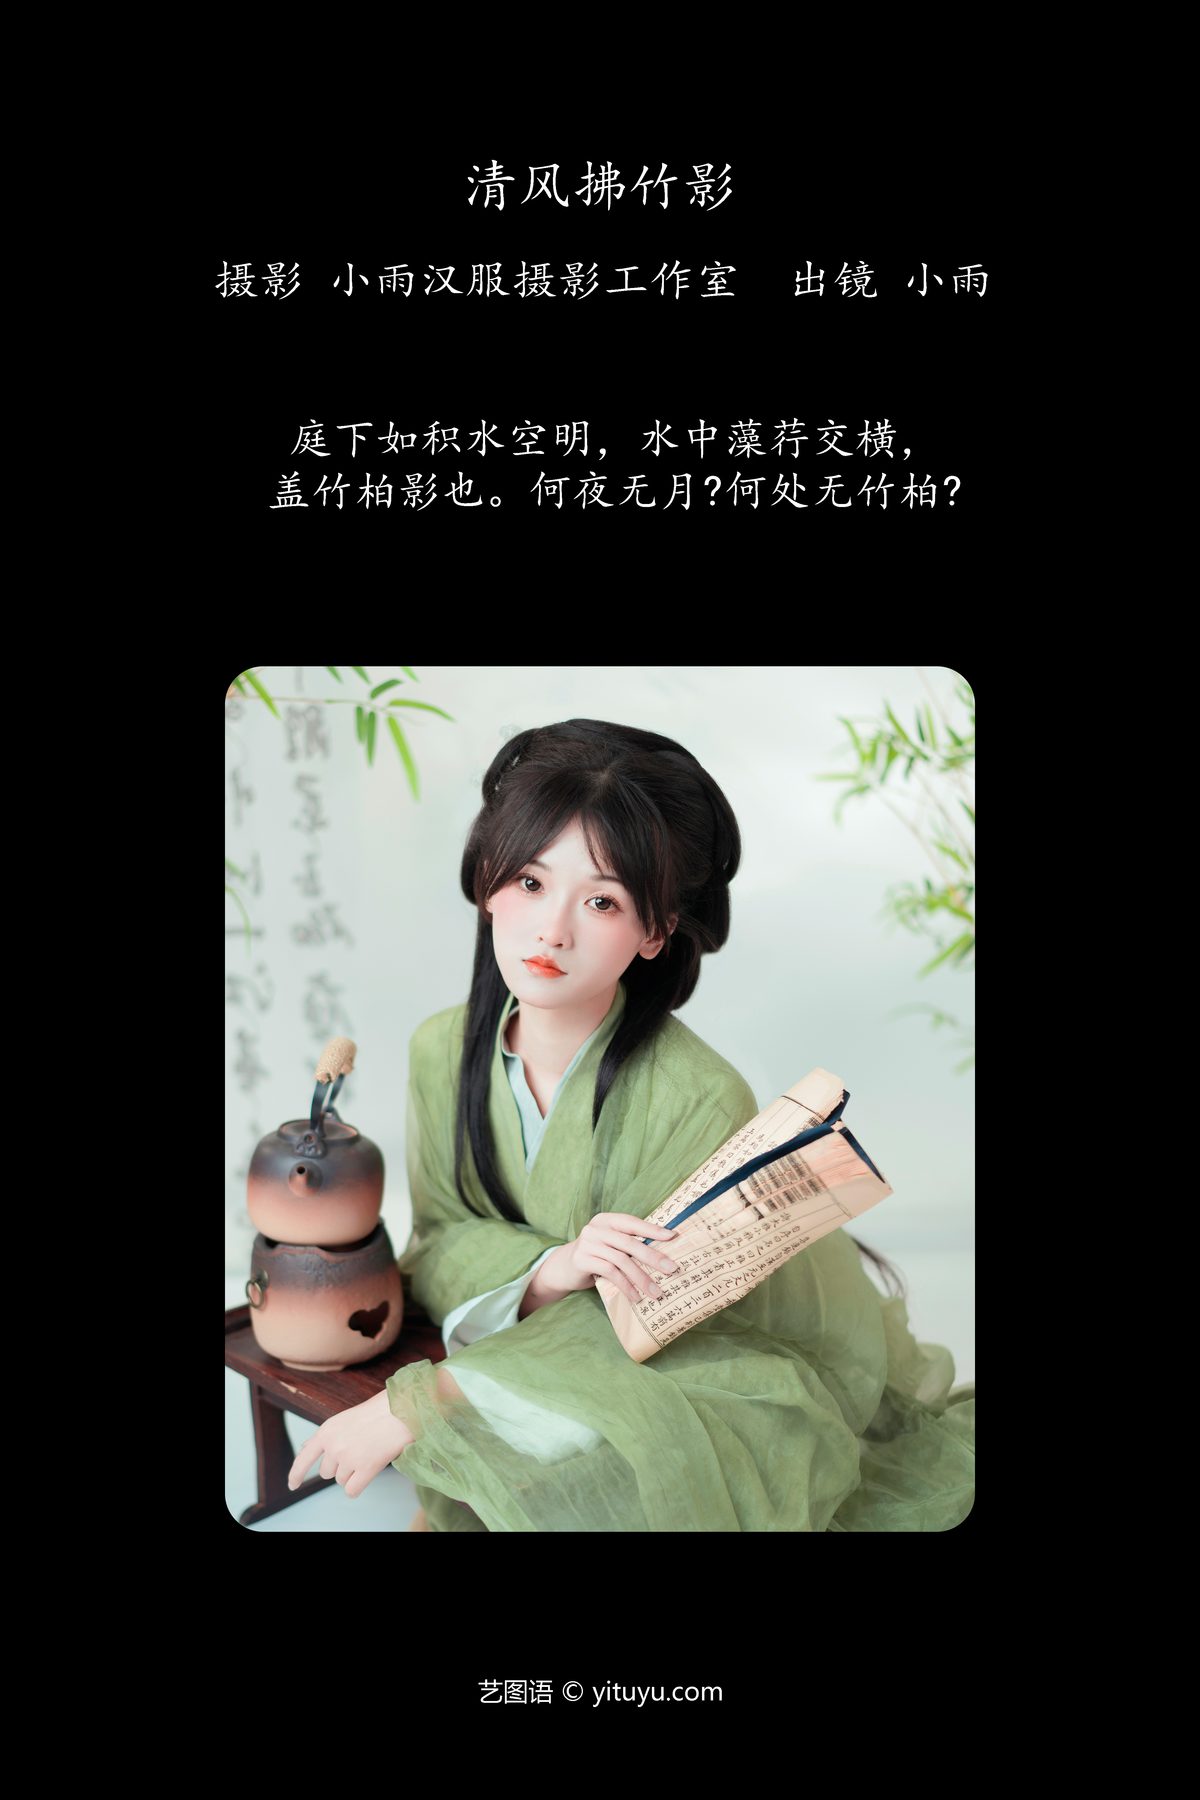 YiTuYu艺图语 Vol 5775 Xiao Yu 0002 5011659917.jpg